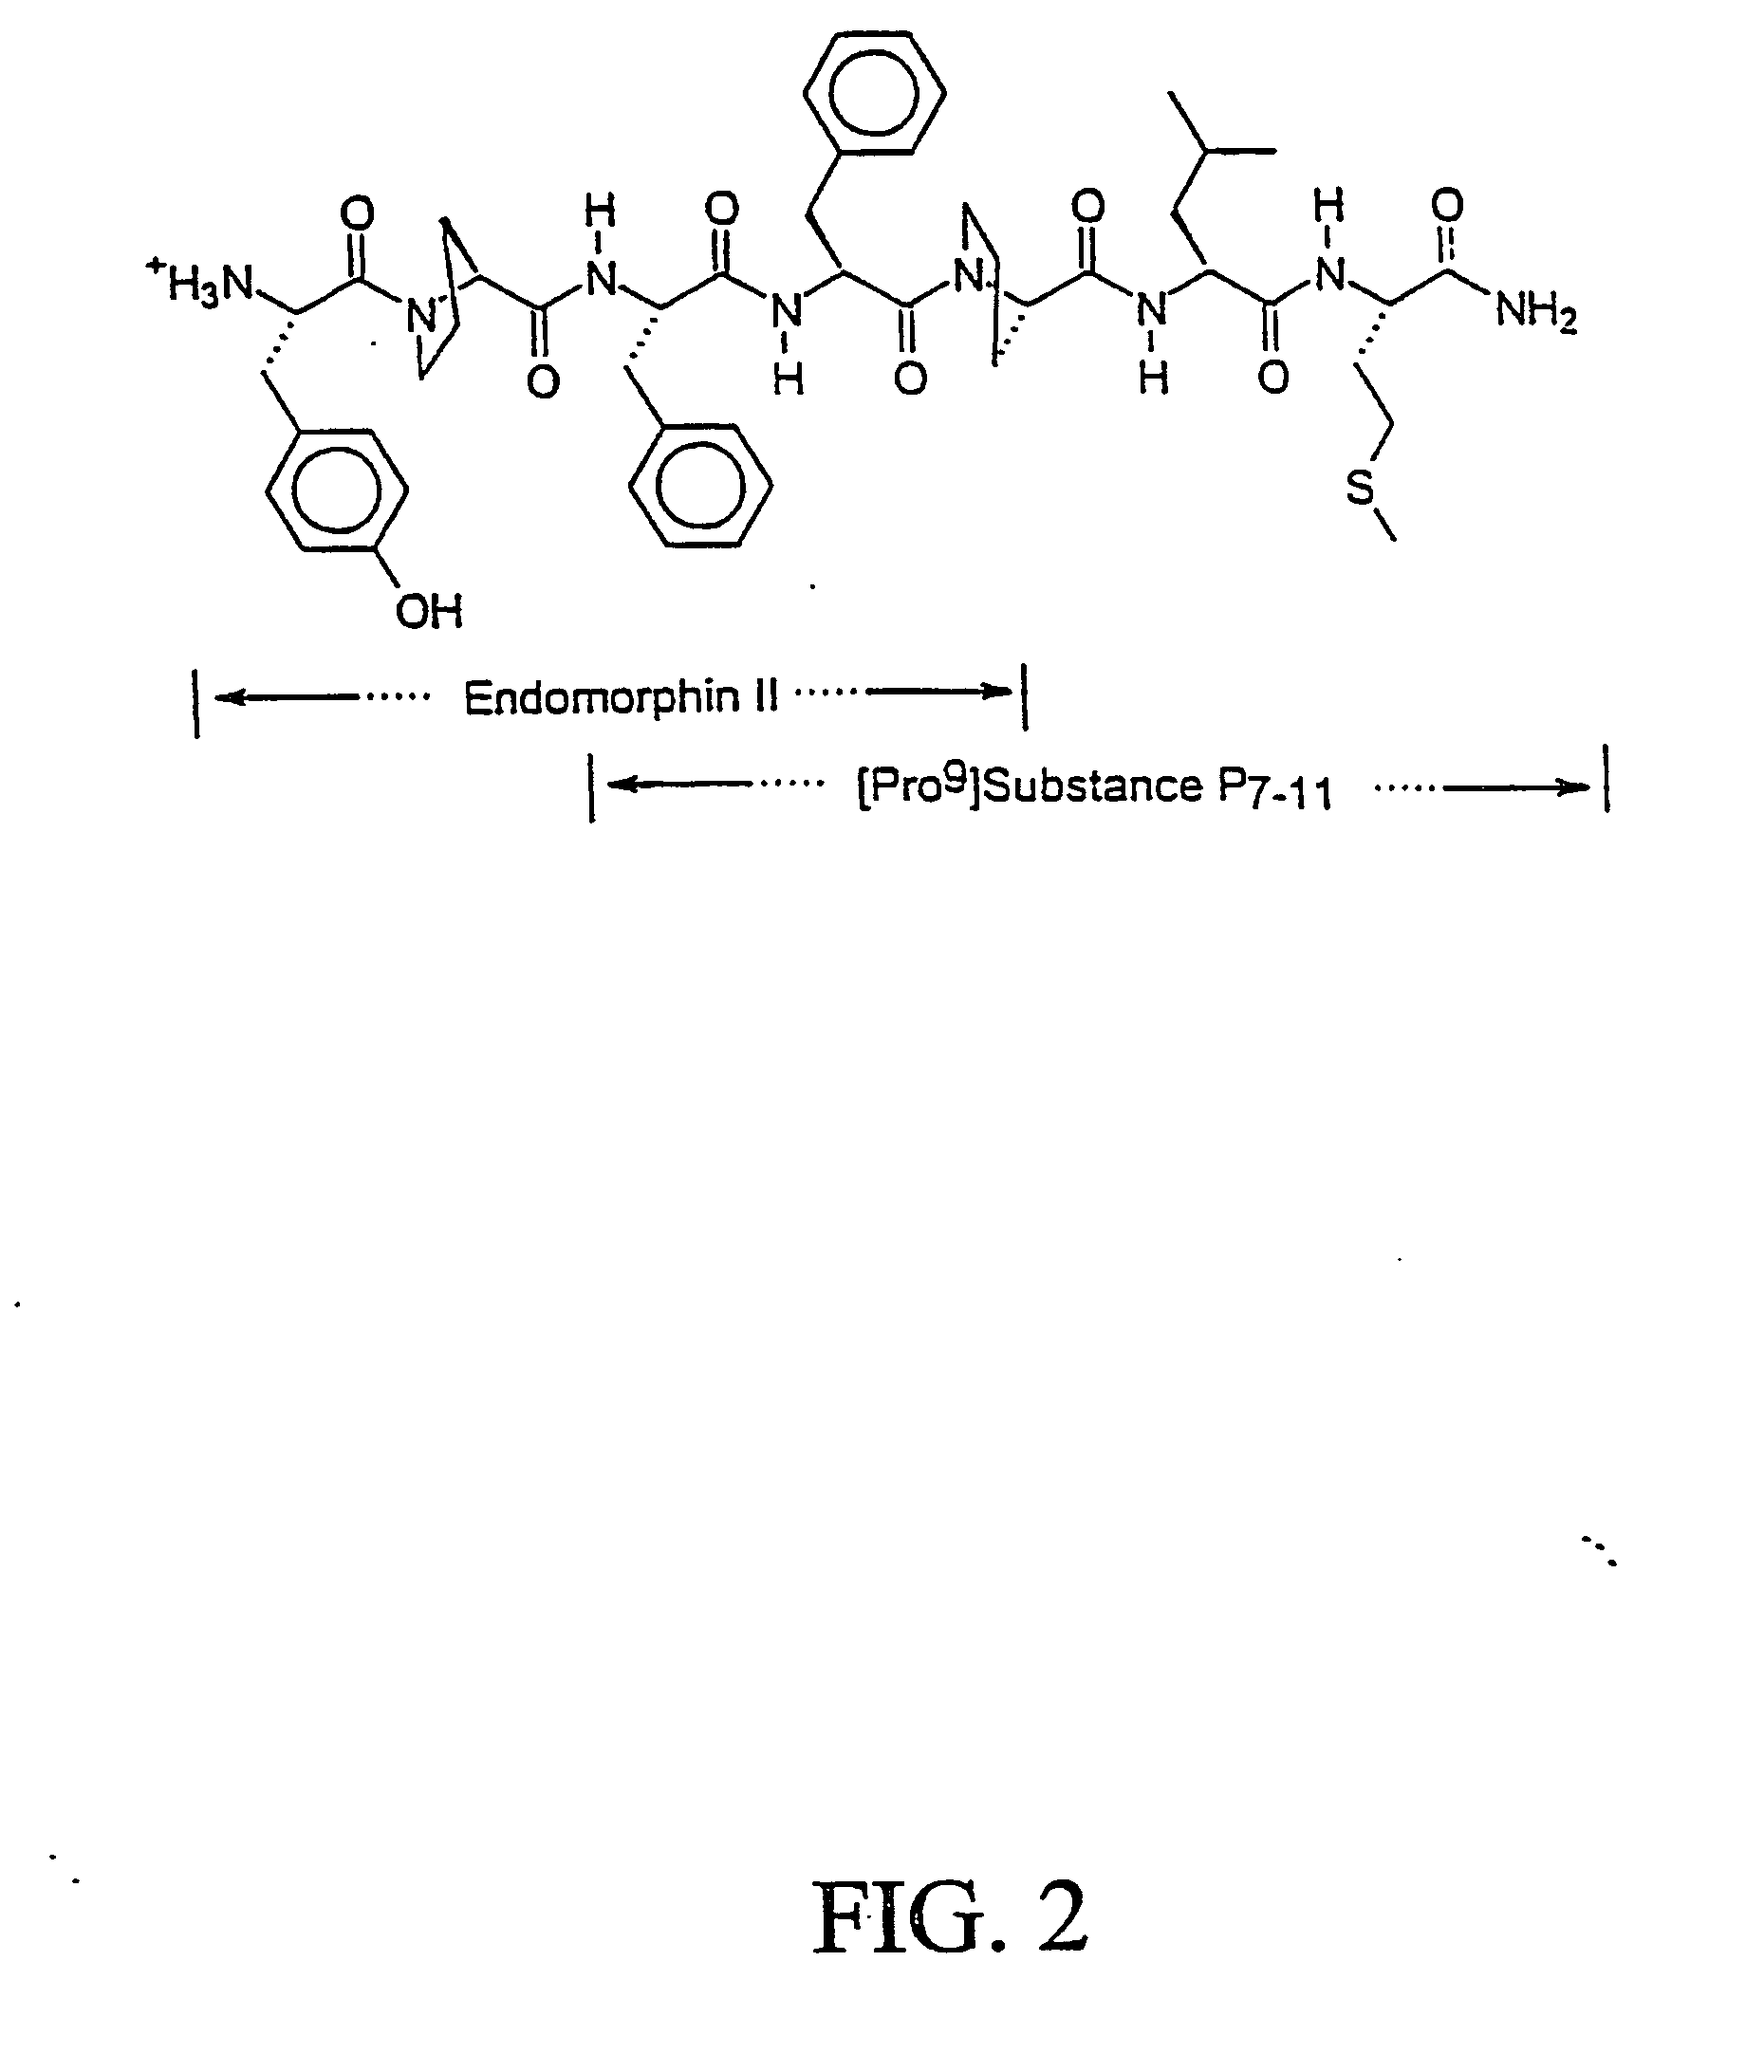 Novel chimeric analgesic peptides